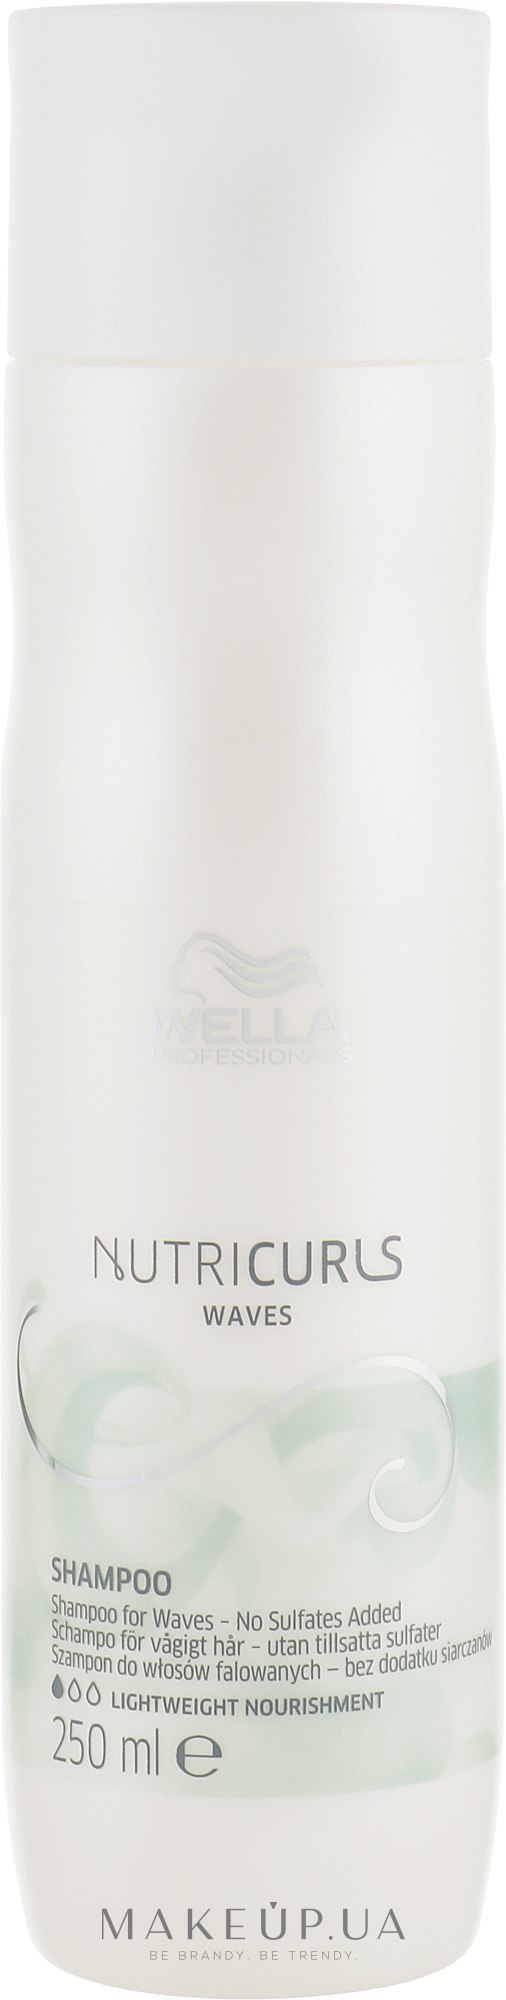 Безсульфатний шампунь для хвилястого волосся - Wella Professionals Nutricurls Waves Shampoo — фото 250ml